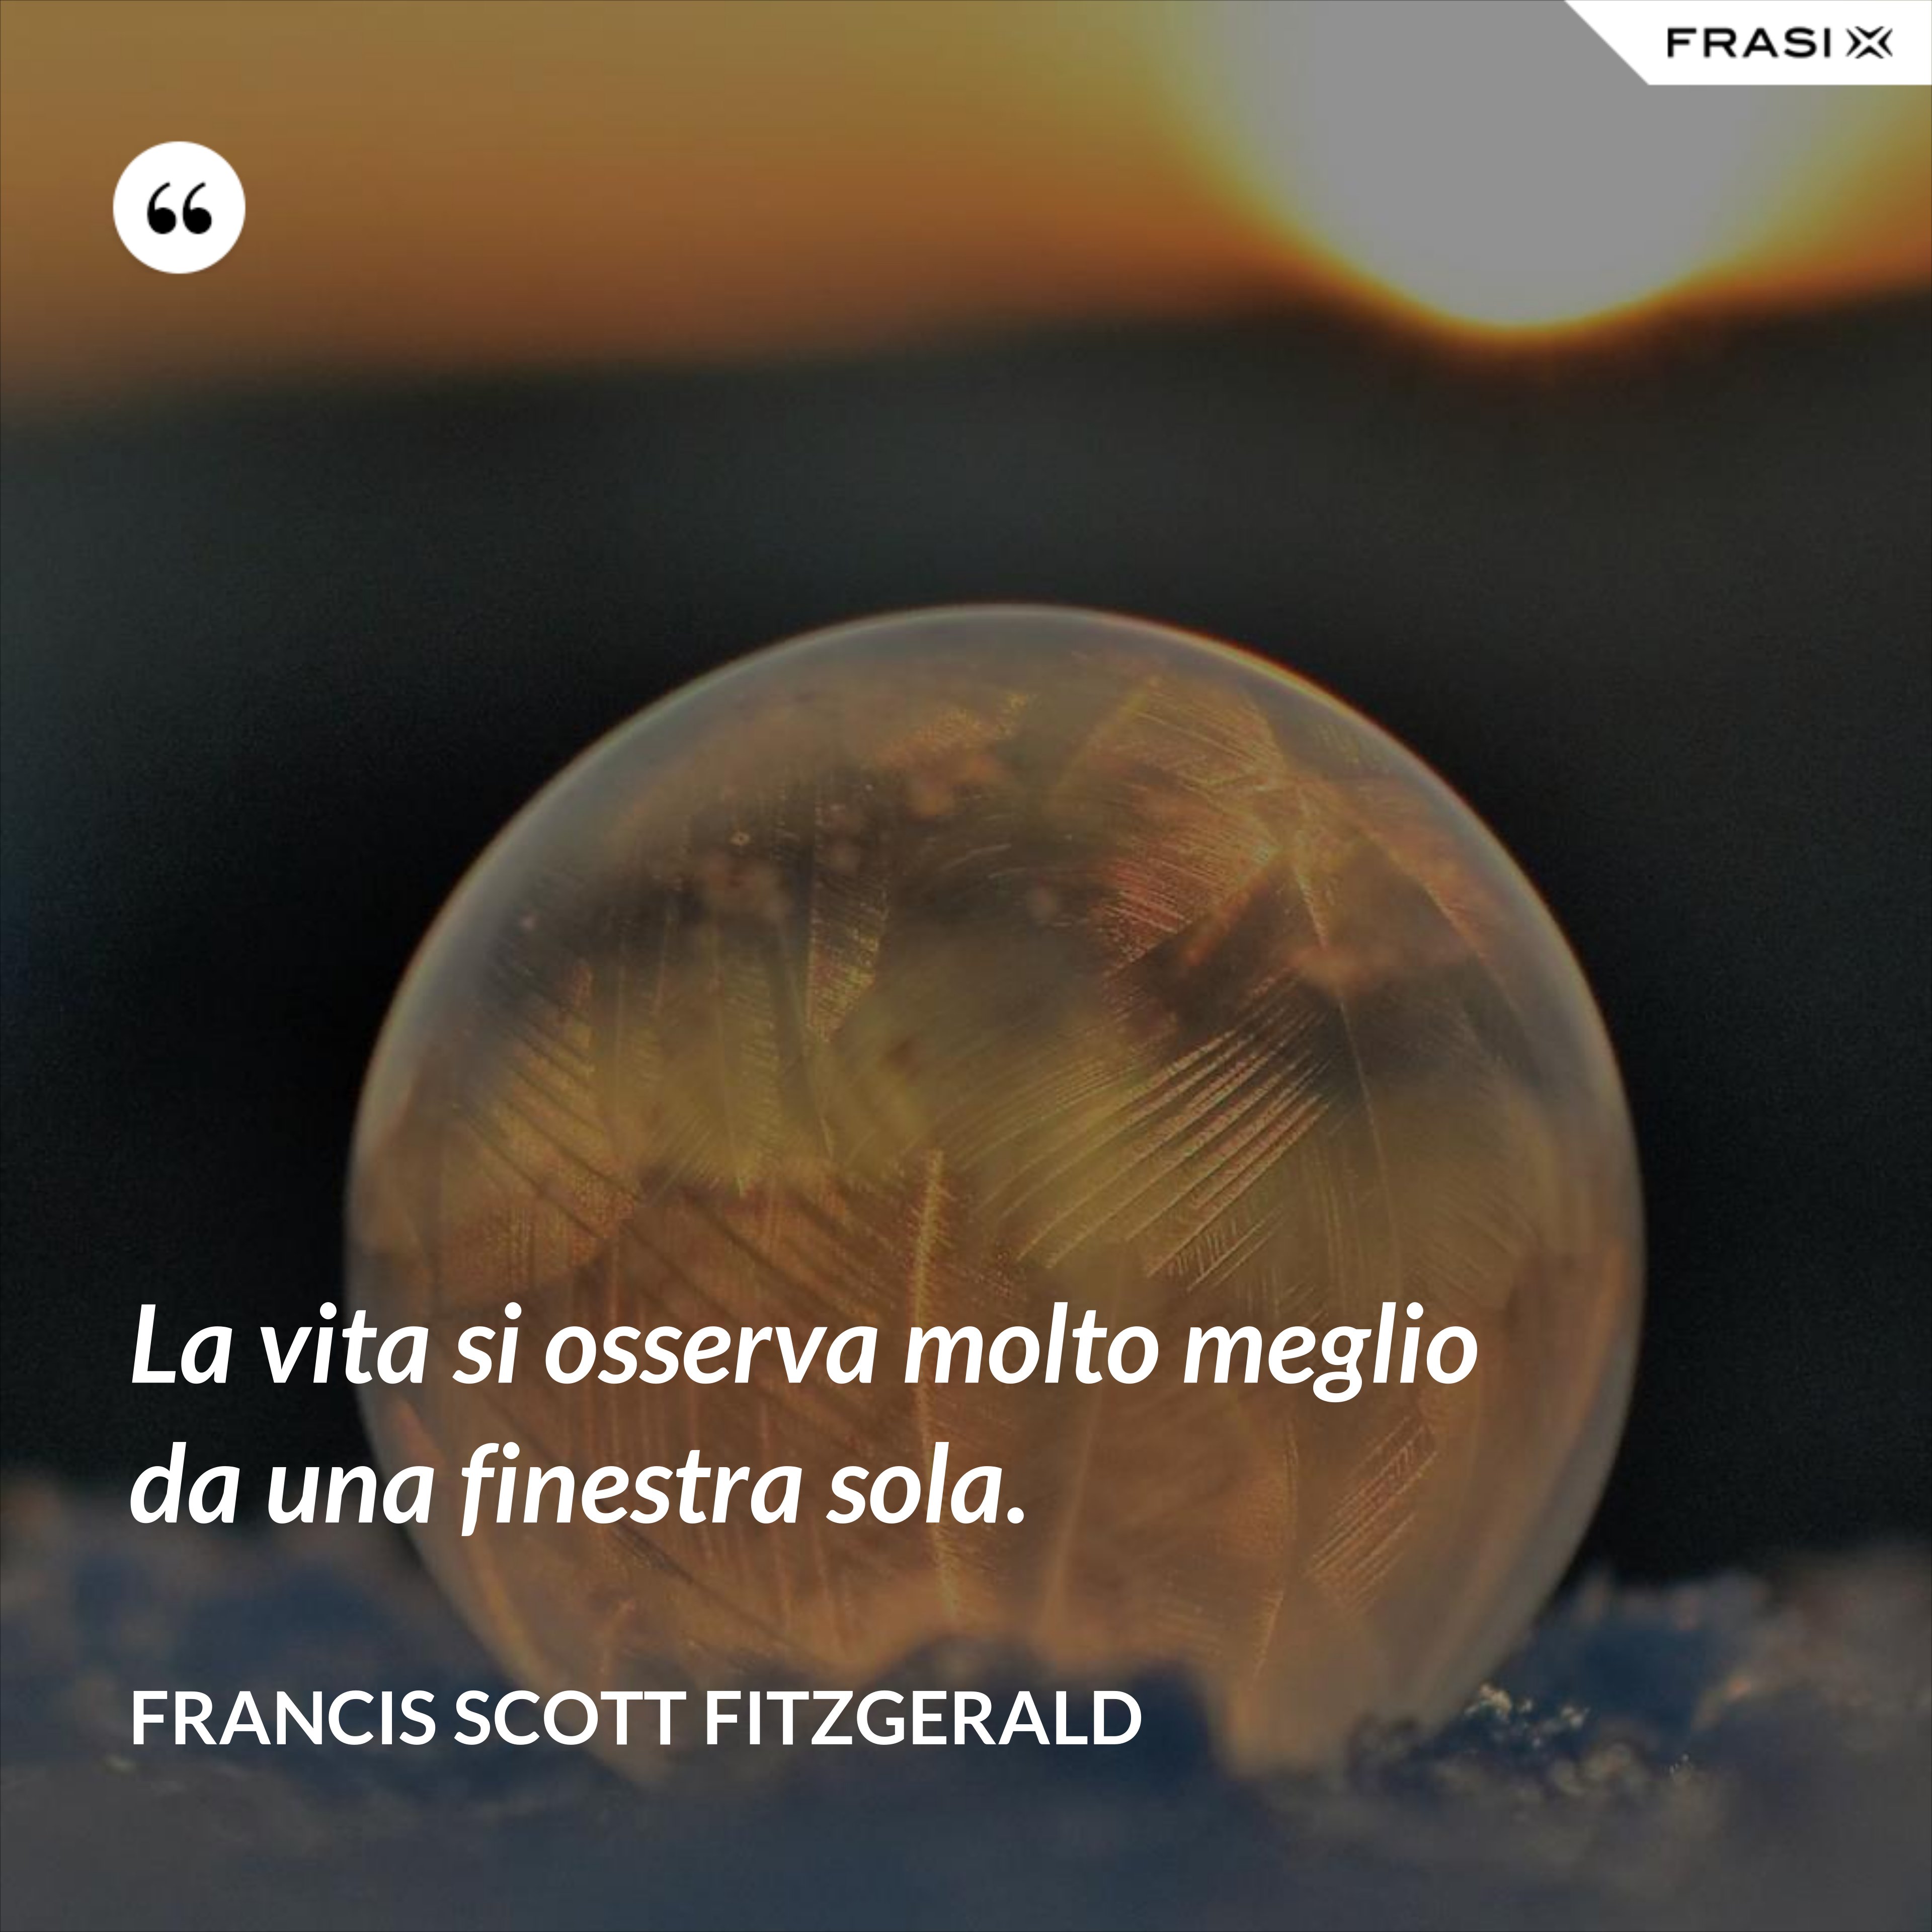 La vita si osserva molto meglio da una finestra sola. - Francis Scott Fitzgerald